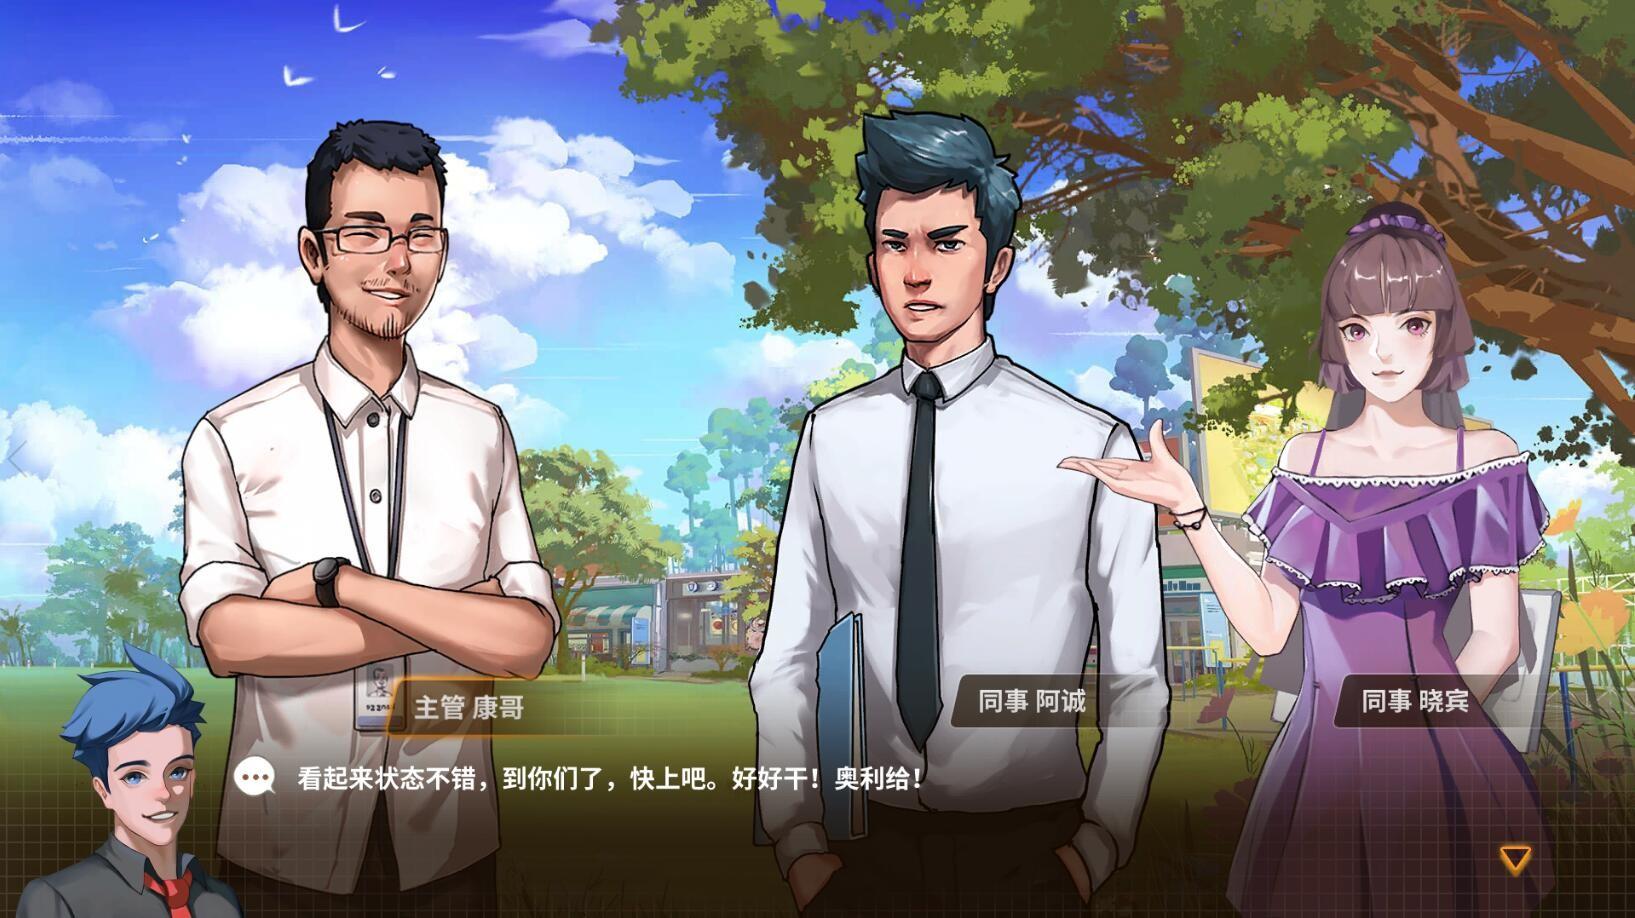 Screenshot 1 of Simulador de escritório de Xangai: prólogo 